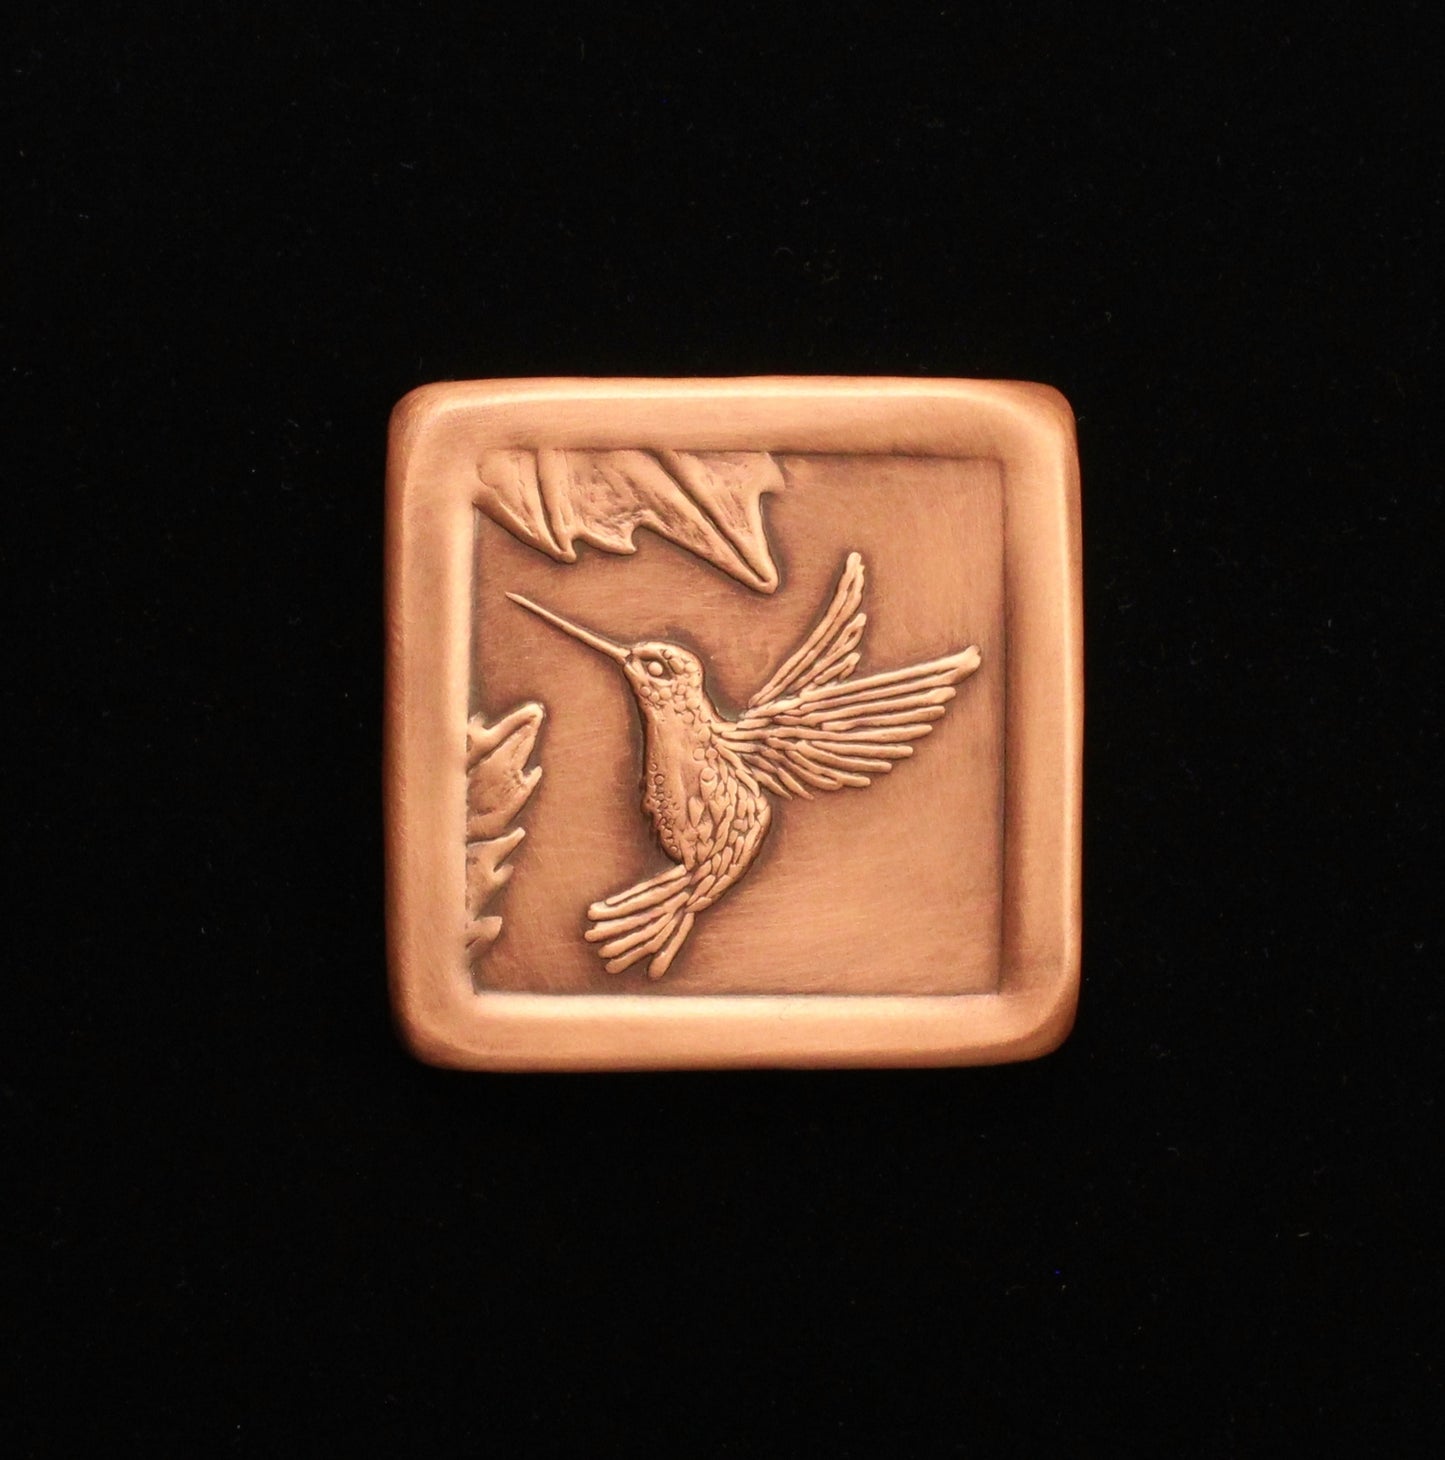 Copper Hummingbird Tile, Facing Left, 3"x 3" x 1/4"